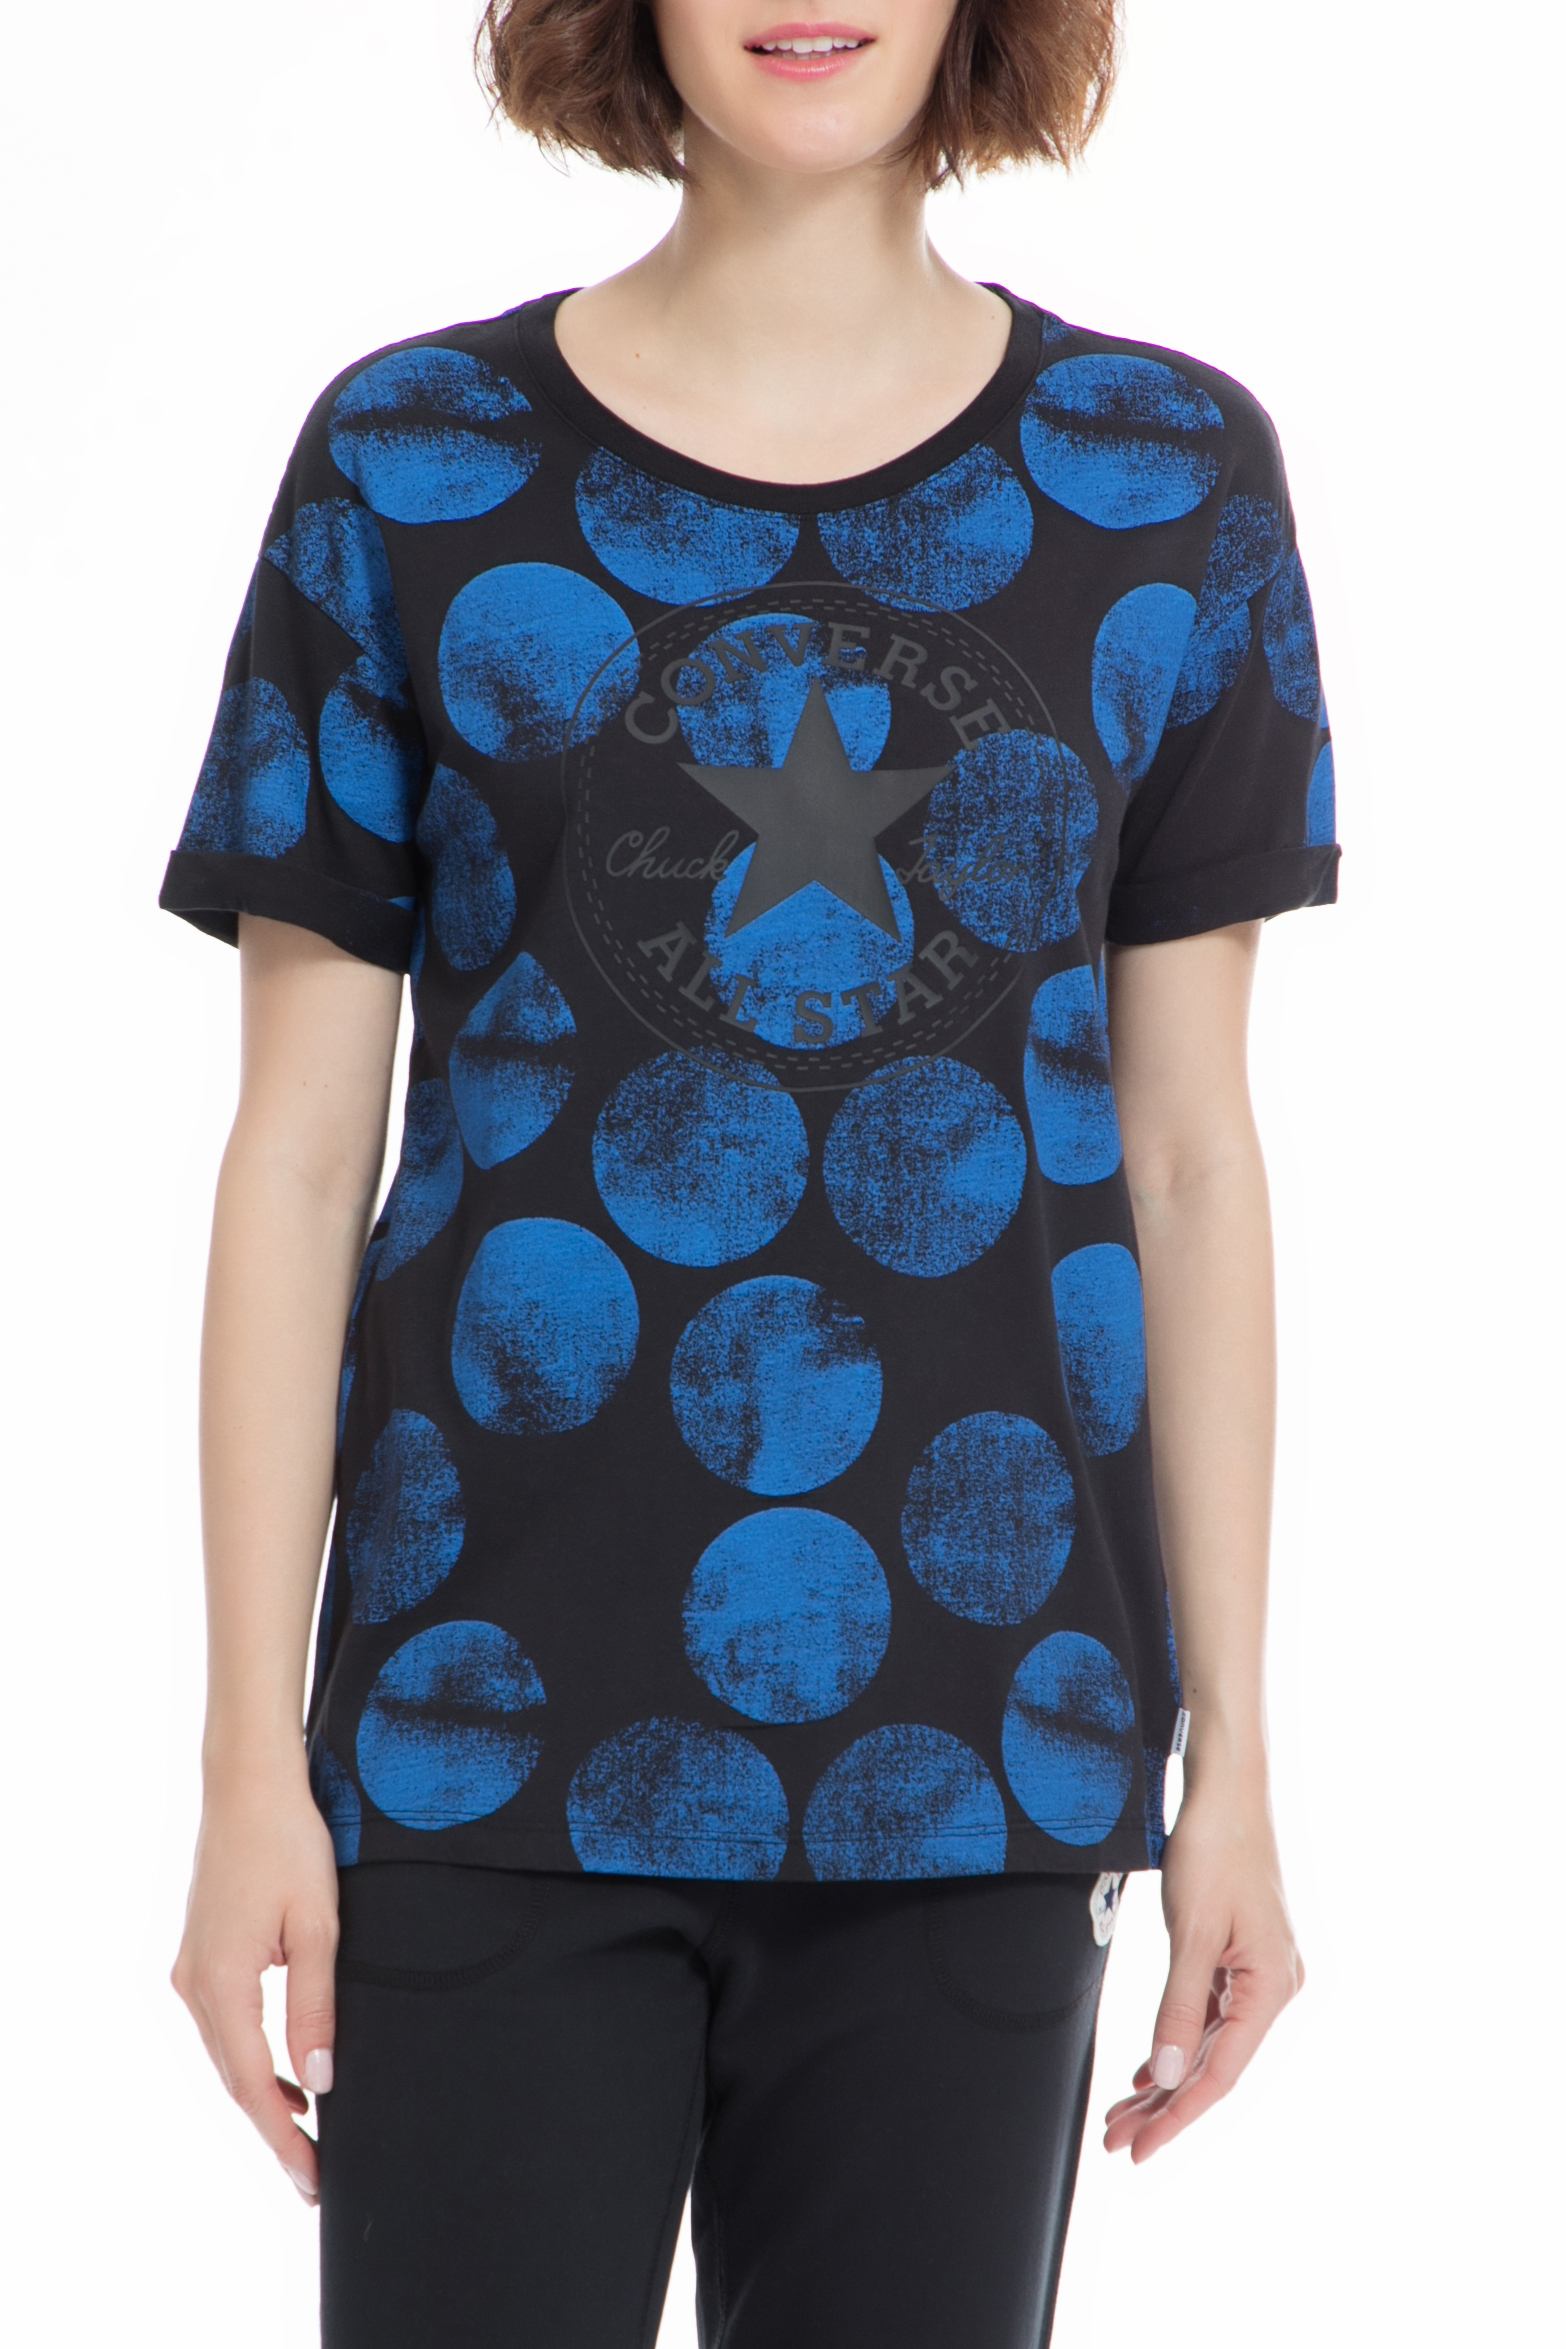 Γυναικεία/Ρούχα/Αθλητικά/T-shirt-Τοπ CONVERSE - Γυναικείο t-shirt CONVERSE μπλε μαύρο